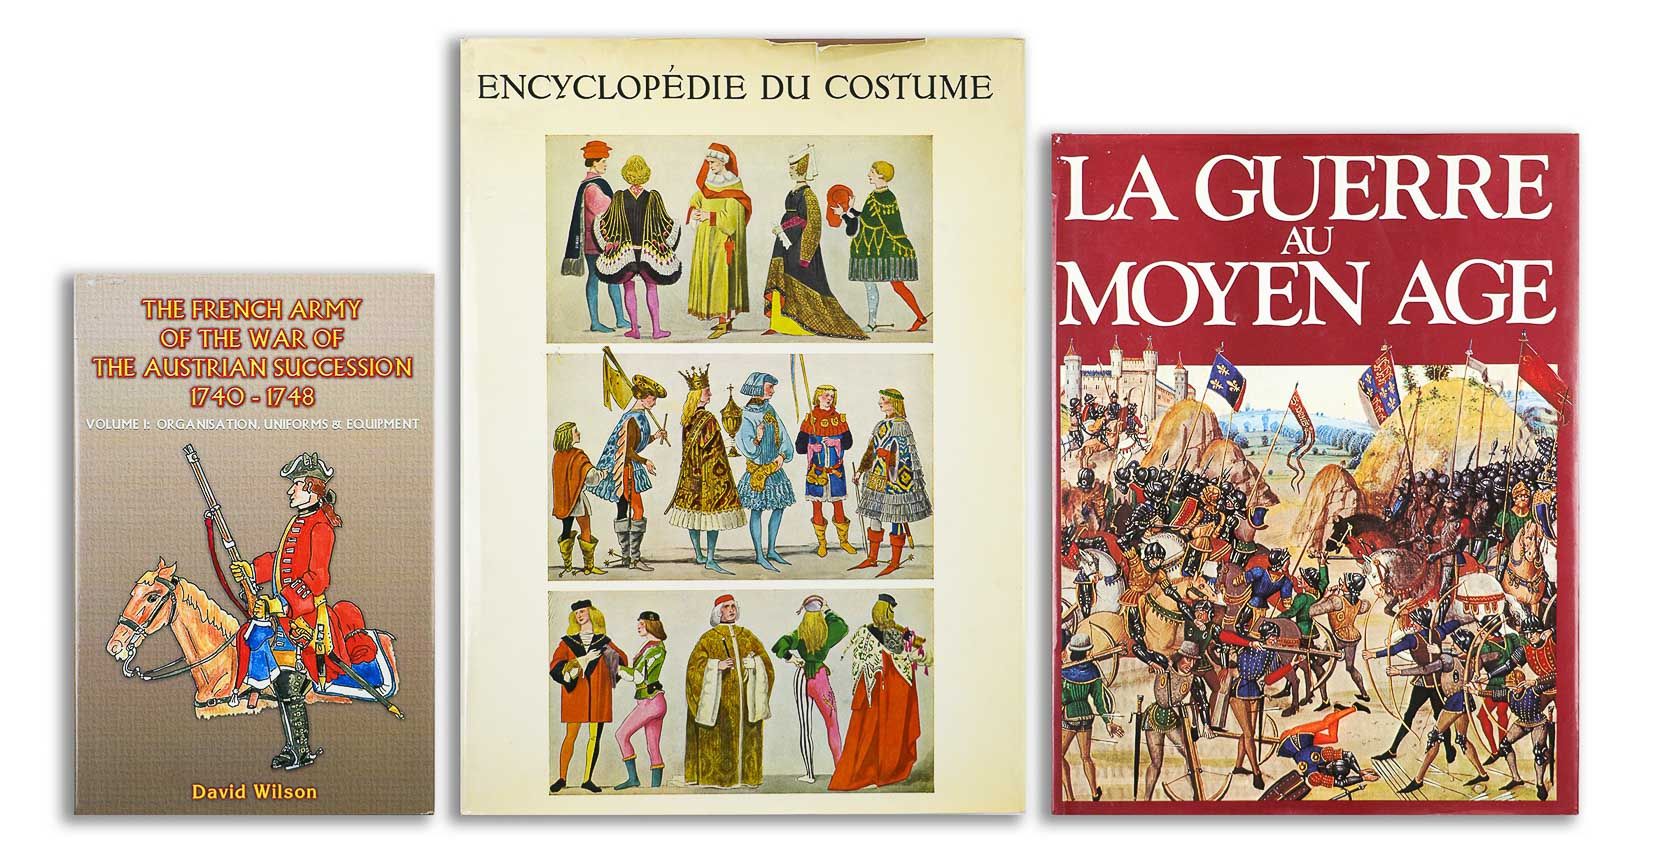 Null Lot de trois volumes reliés

"La guerre au moyen âge". PML Editions

"Encyc&hellip;